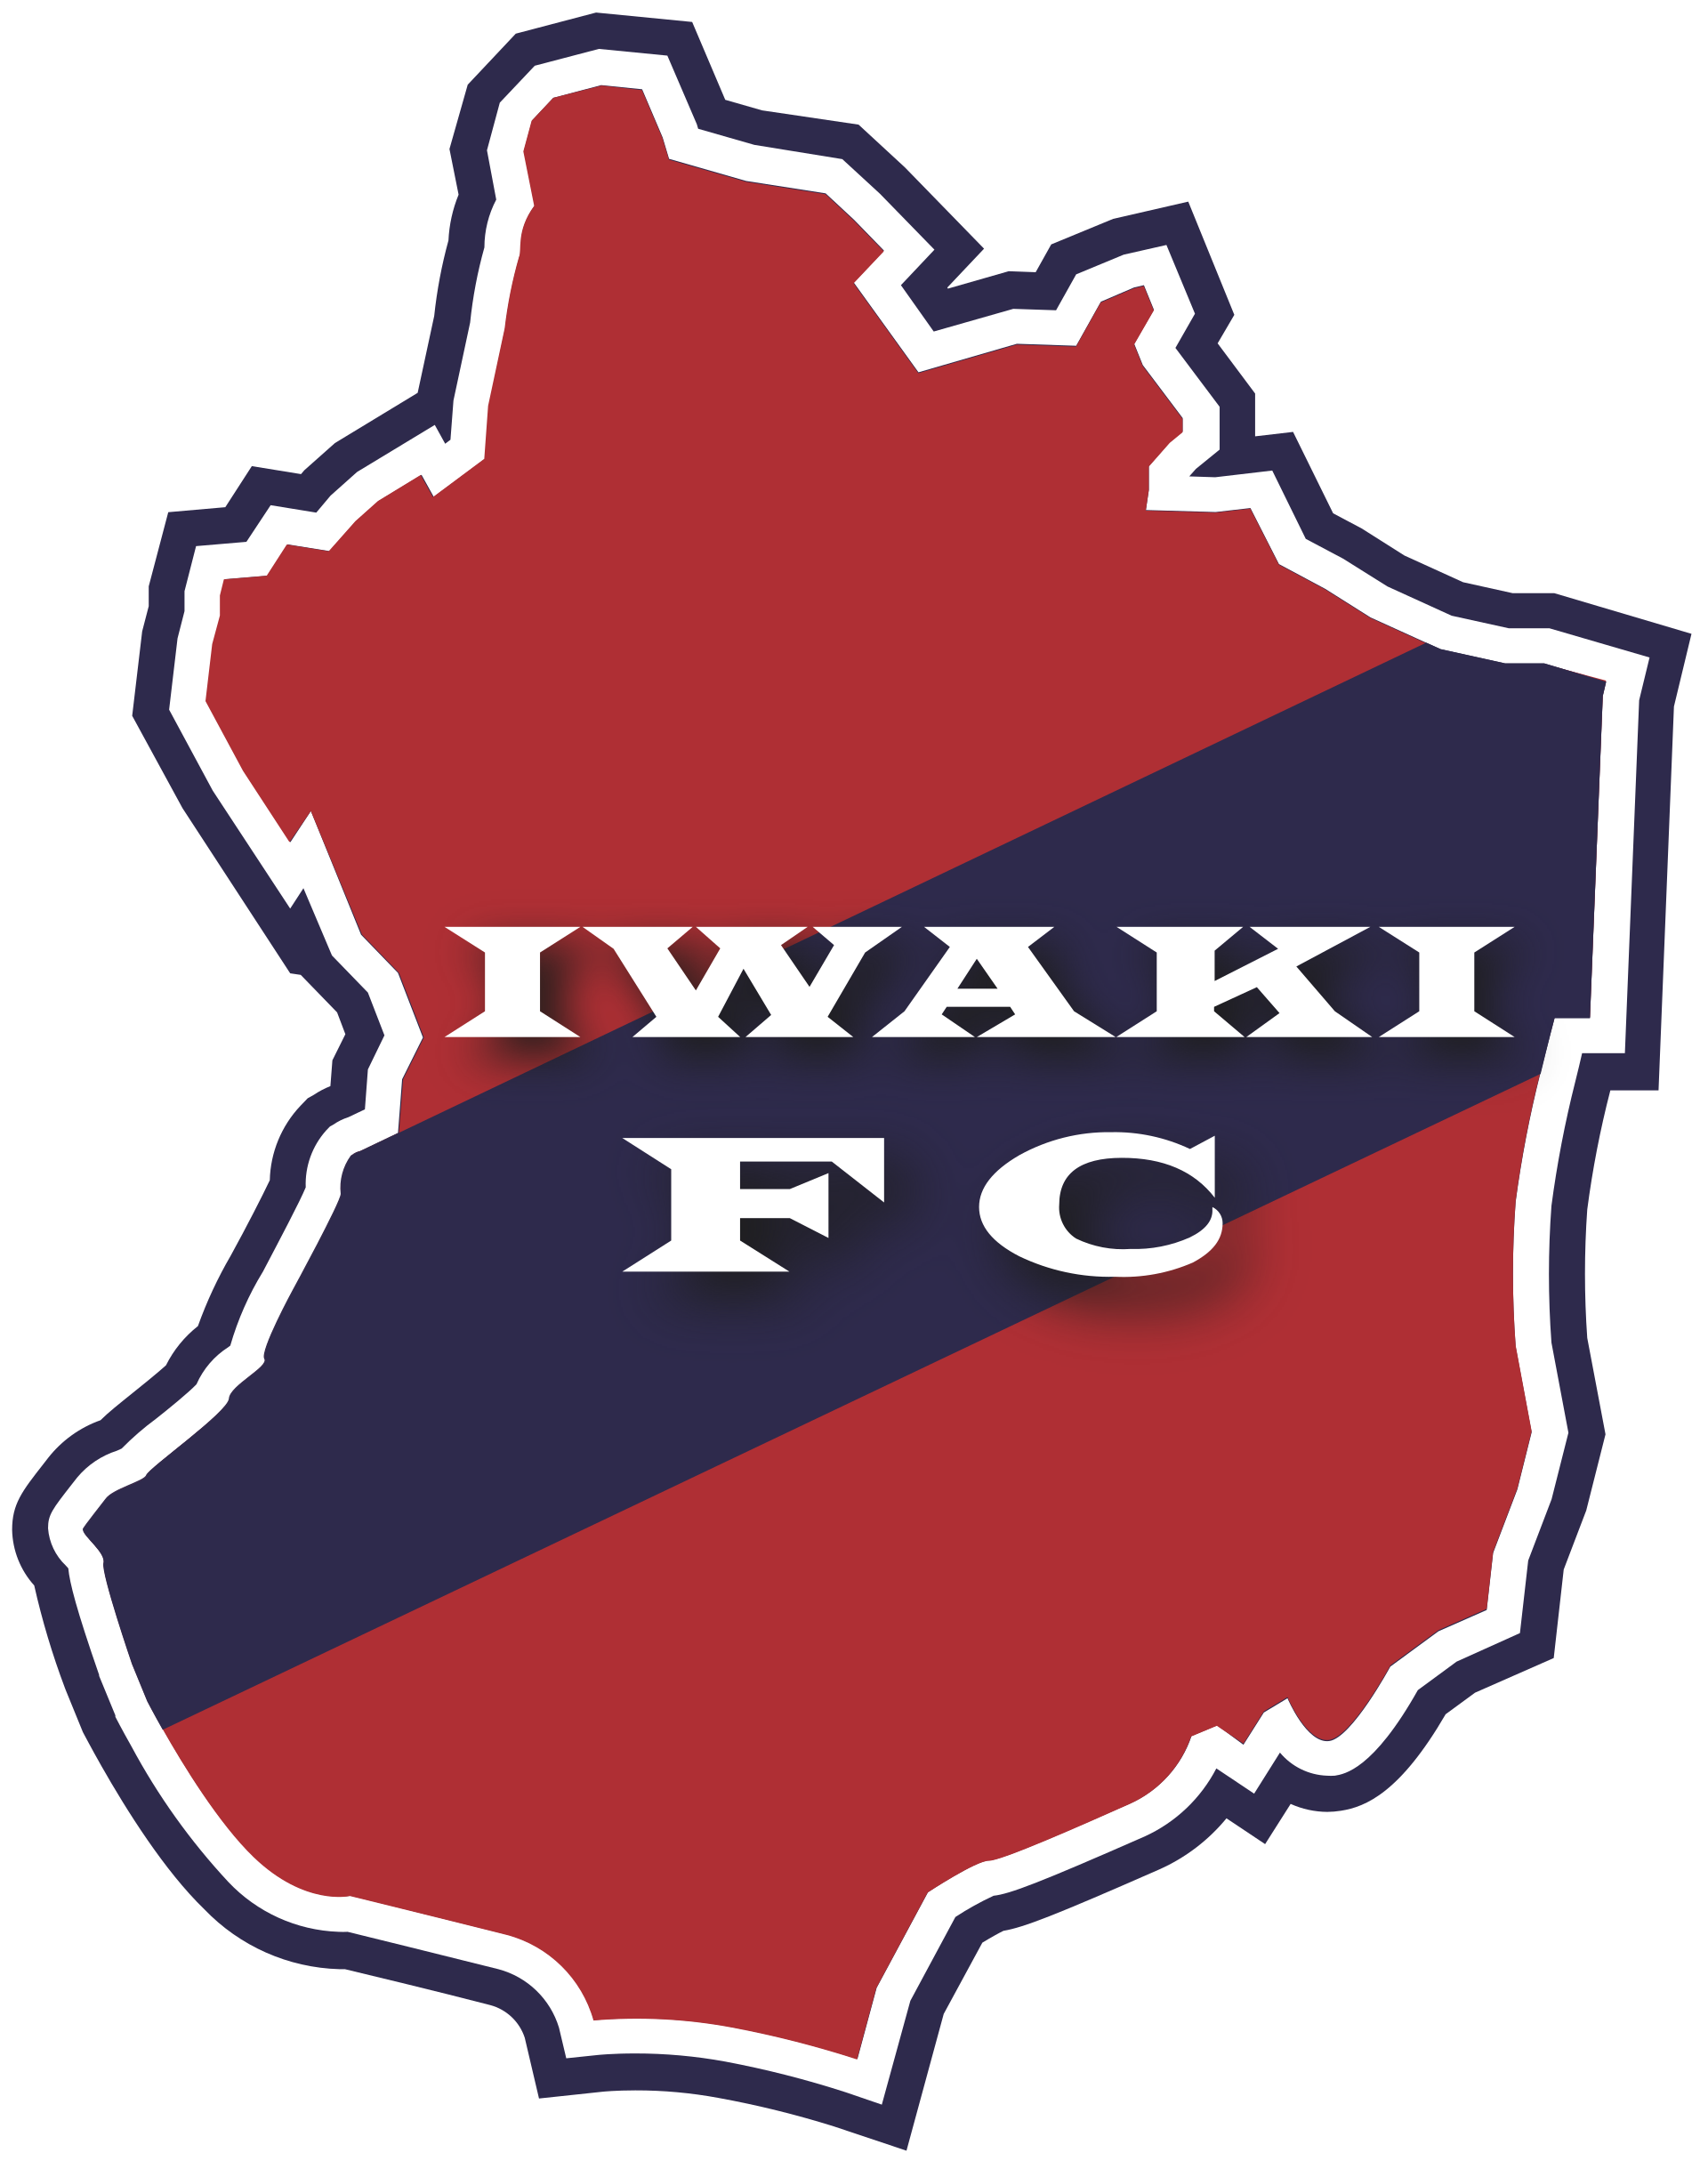 Wappen ehemals Iwaki FC